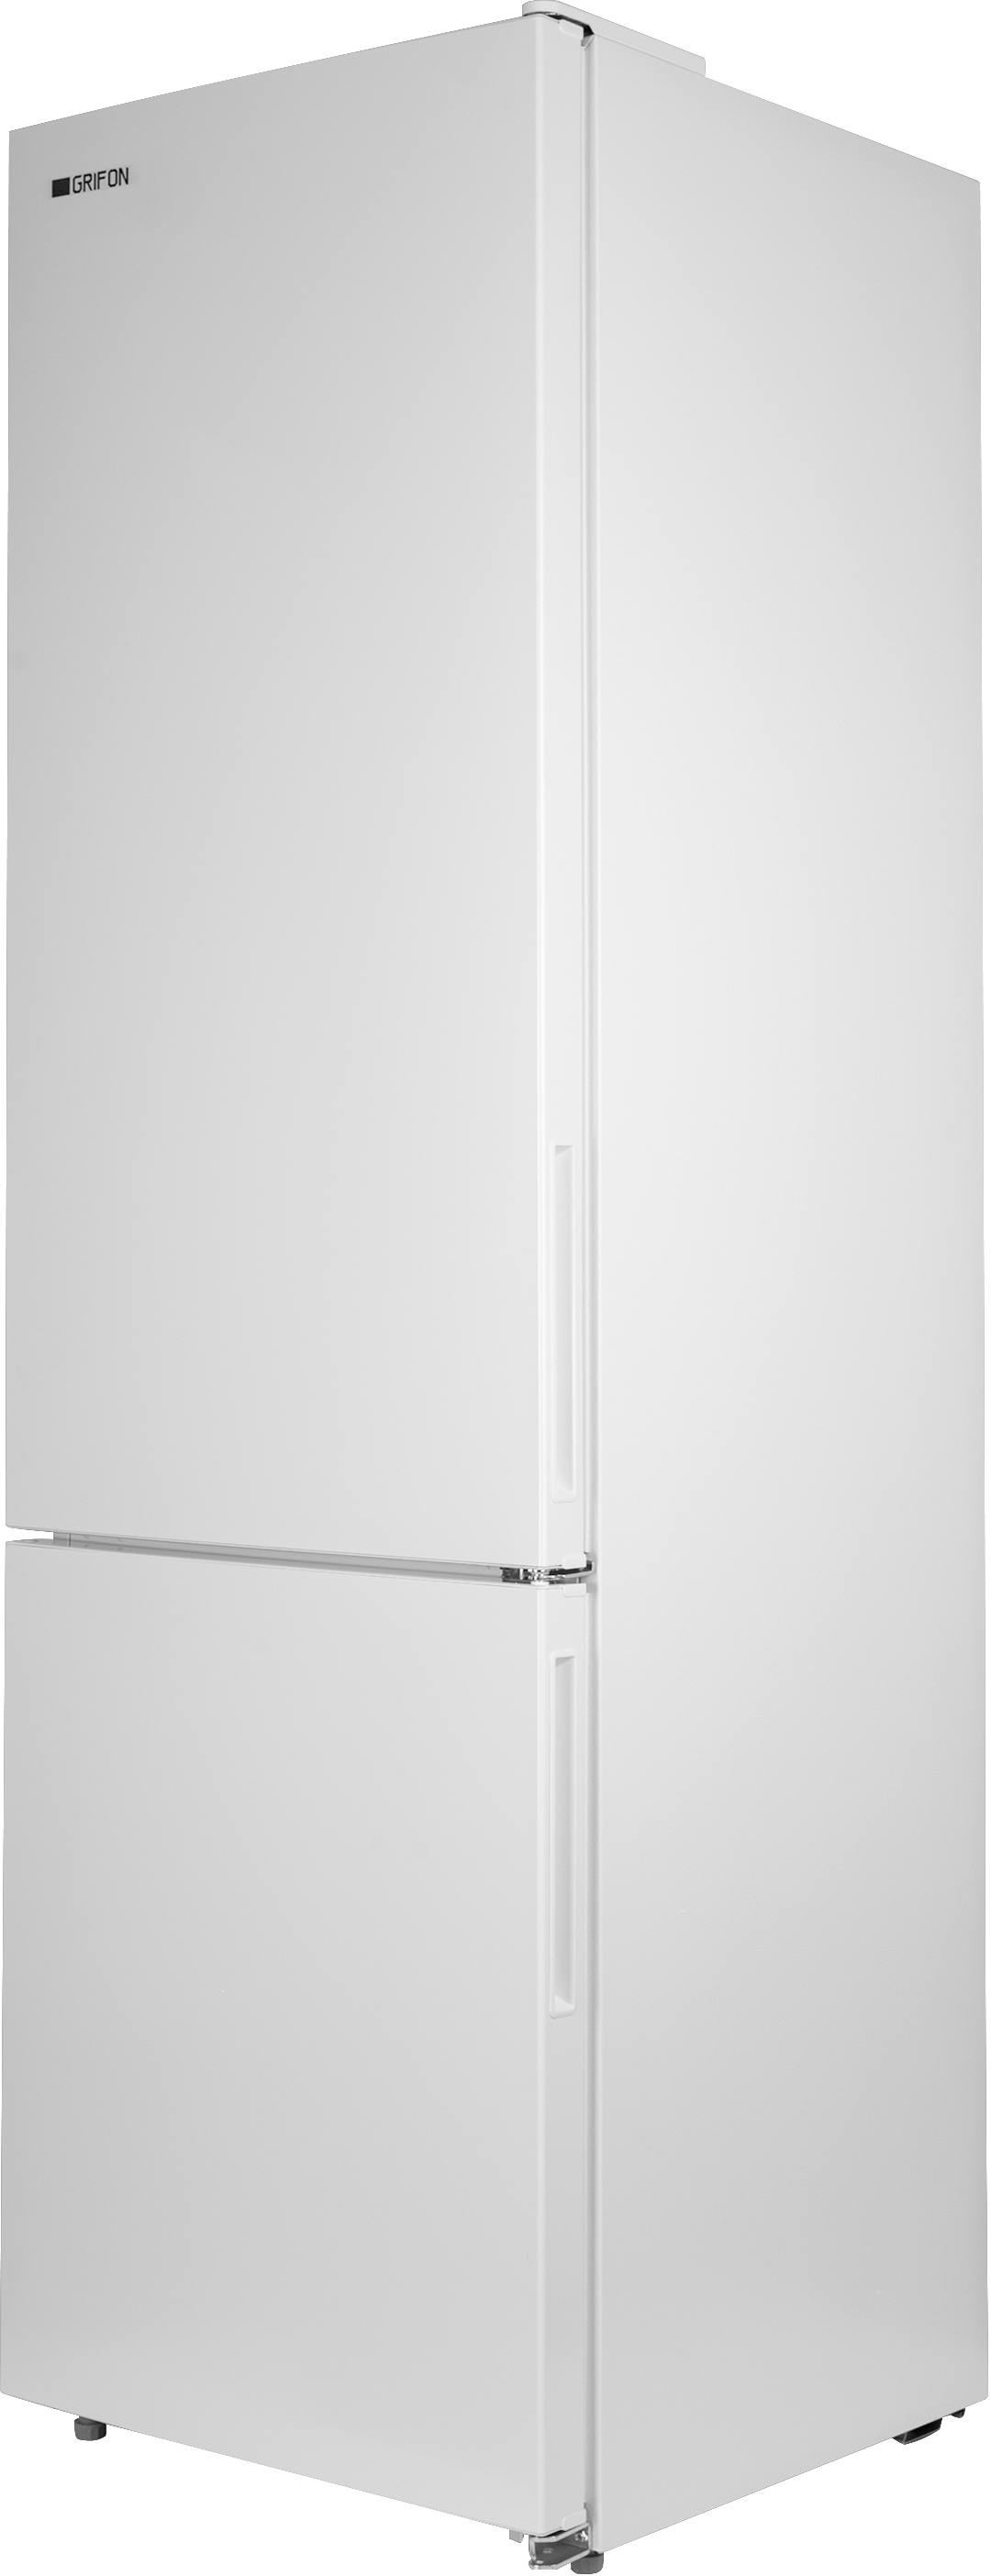 Холодильник Grifon NFN-185W отзывы - изображения 5